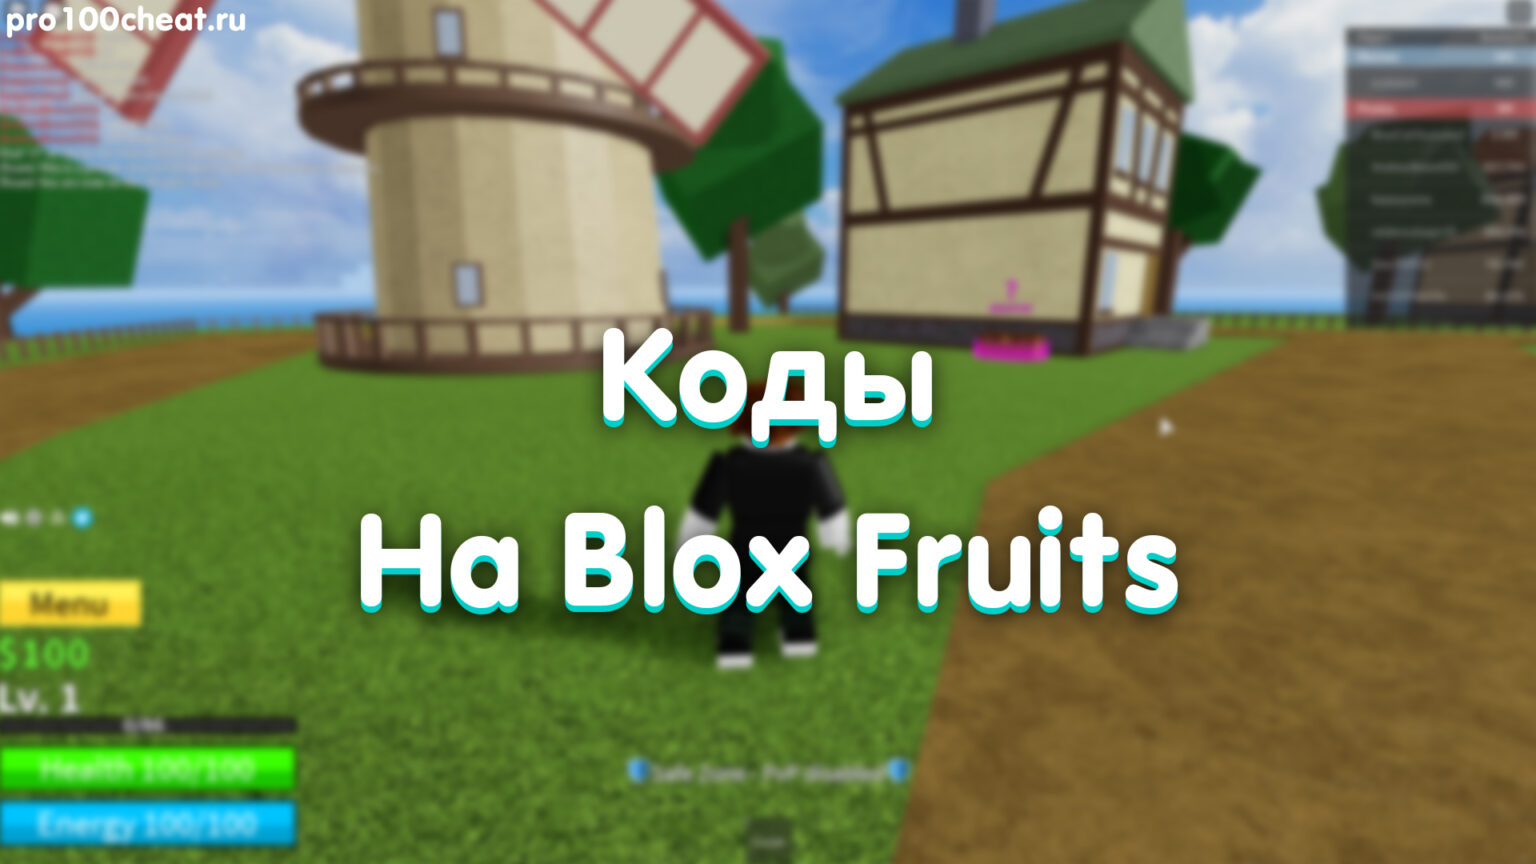 Моря blox fruit. Коды BLOX Fruits. BLOX фрукты коды. Коды Блокс Фрут. Карта BLOX Fruits.